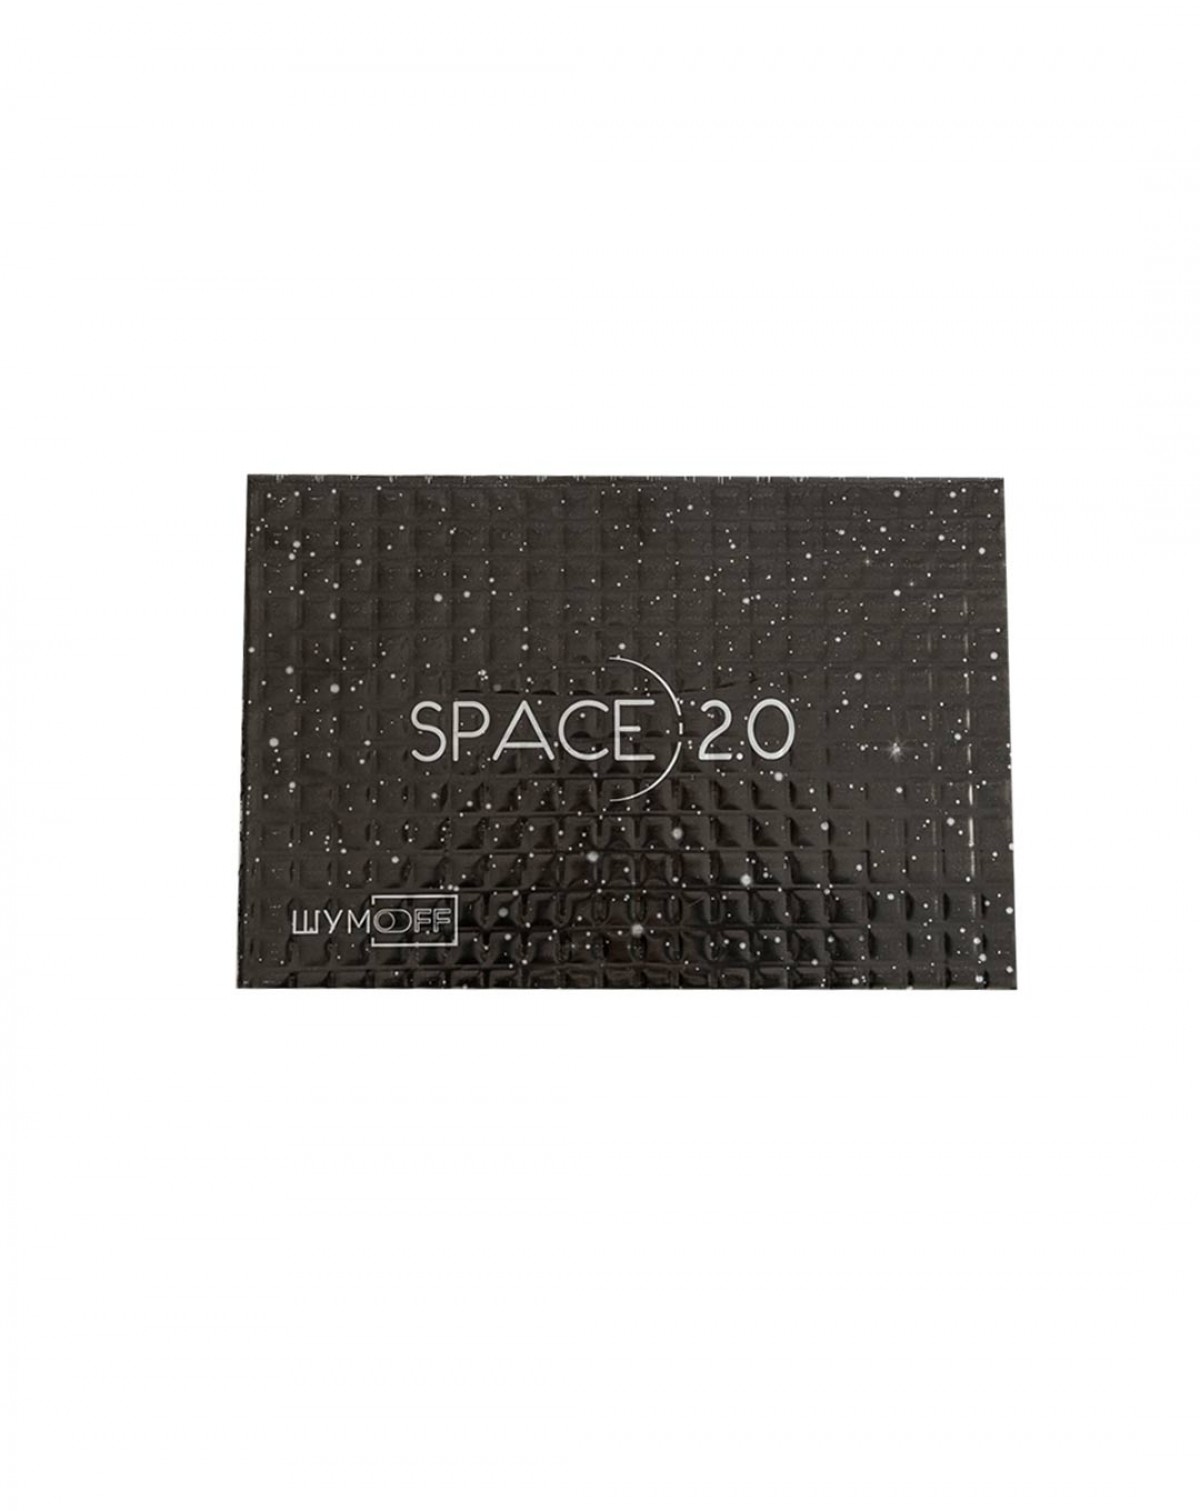 Вибропоглощающий материал для авто Шумофф SPACE 2.0 (5 листов) черный 37х25 см